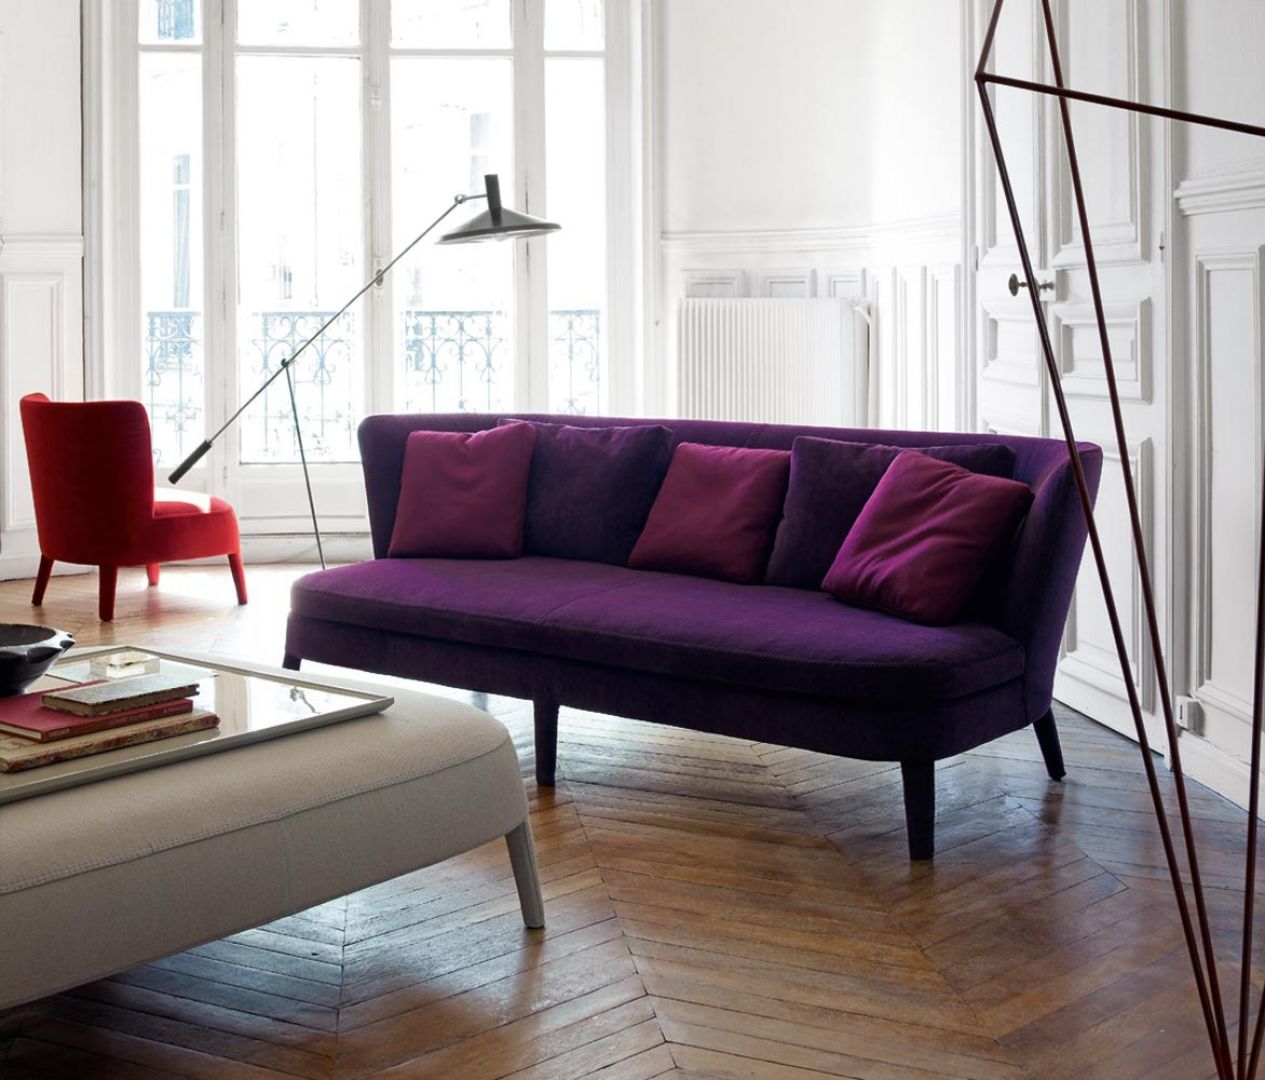 Soczysty, śliwkowy fiolet i klasyczna forma sprawiają, że sofa jest zachwycająca. Szeroko rozstawione nóżki dodają jej lekkości. Fot. Maxalto